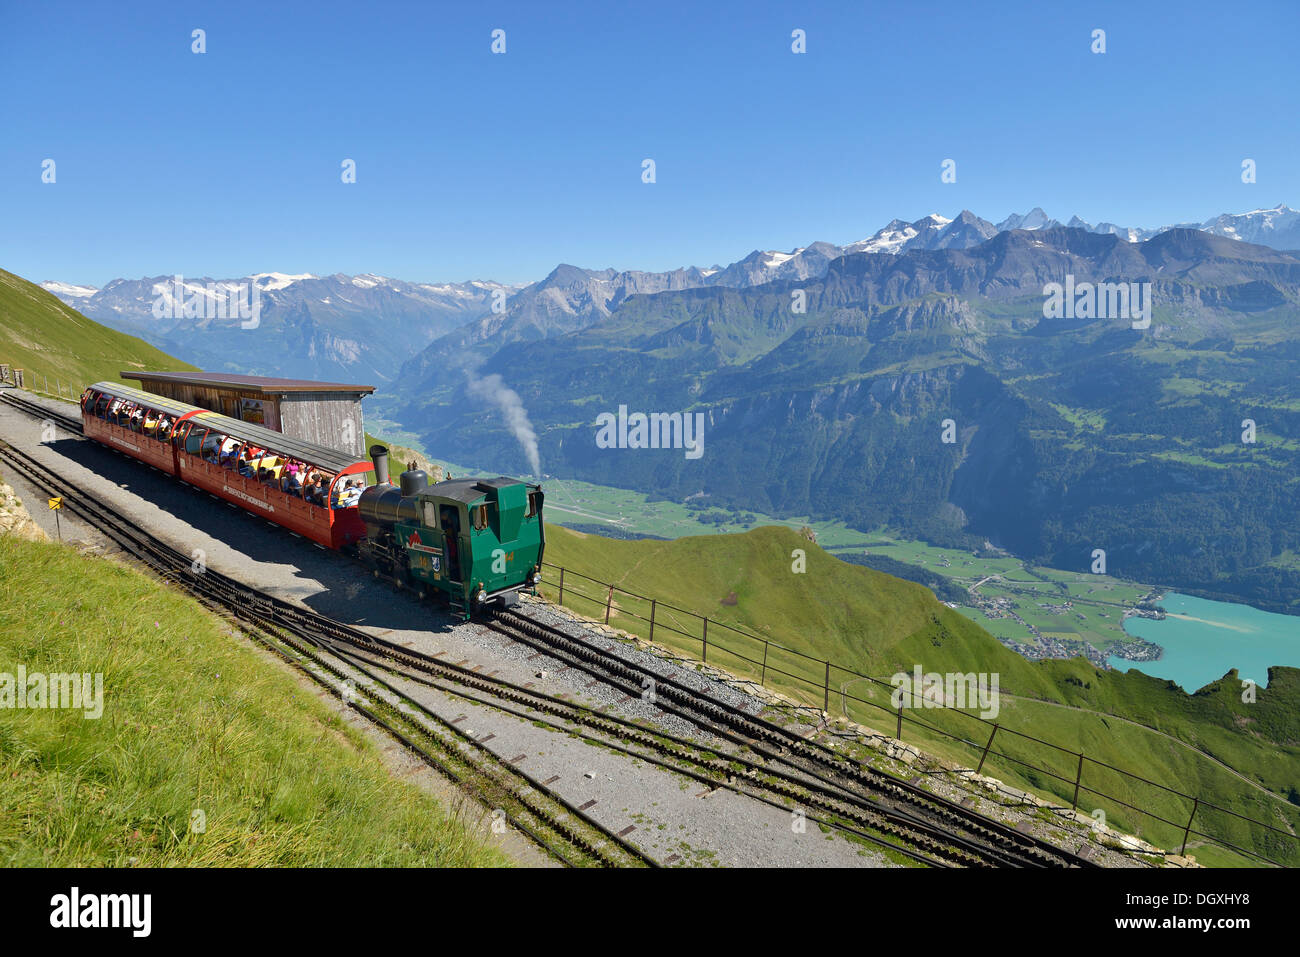 Coal-fired historic steam locomotive on Brienzer Rothorn Mountain, Brienz, Switzerland, Europe Stock Photo